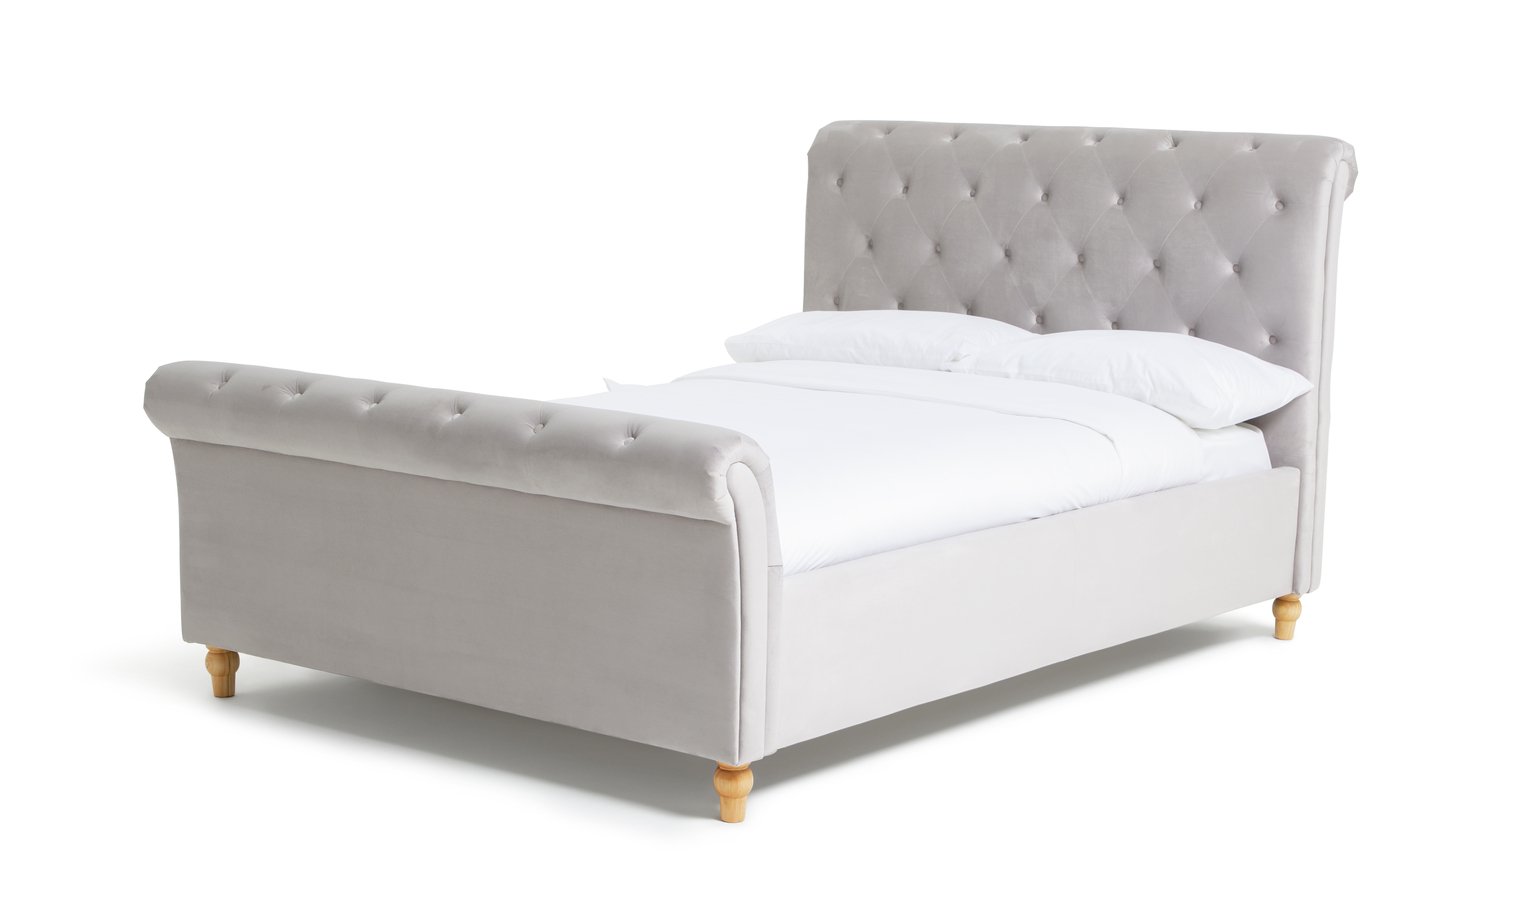 Argos Home Harrogate Kingsize Bed Frame Review